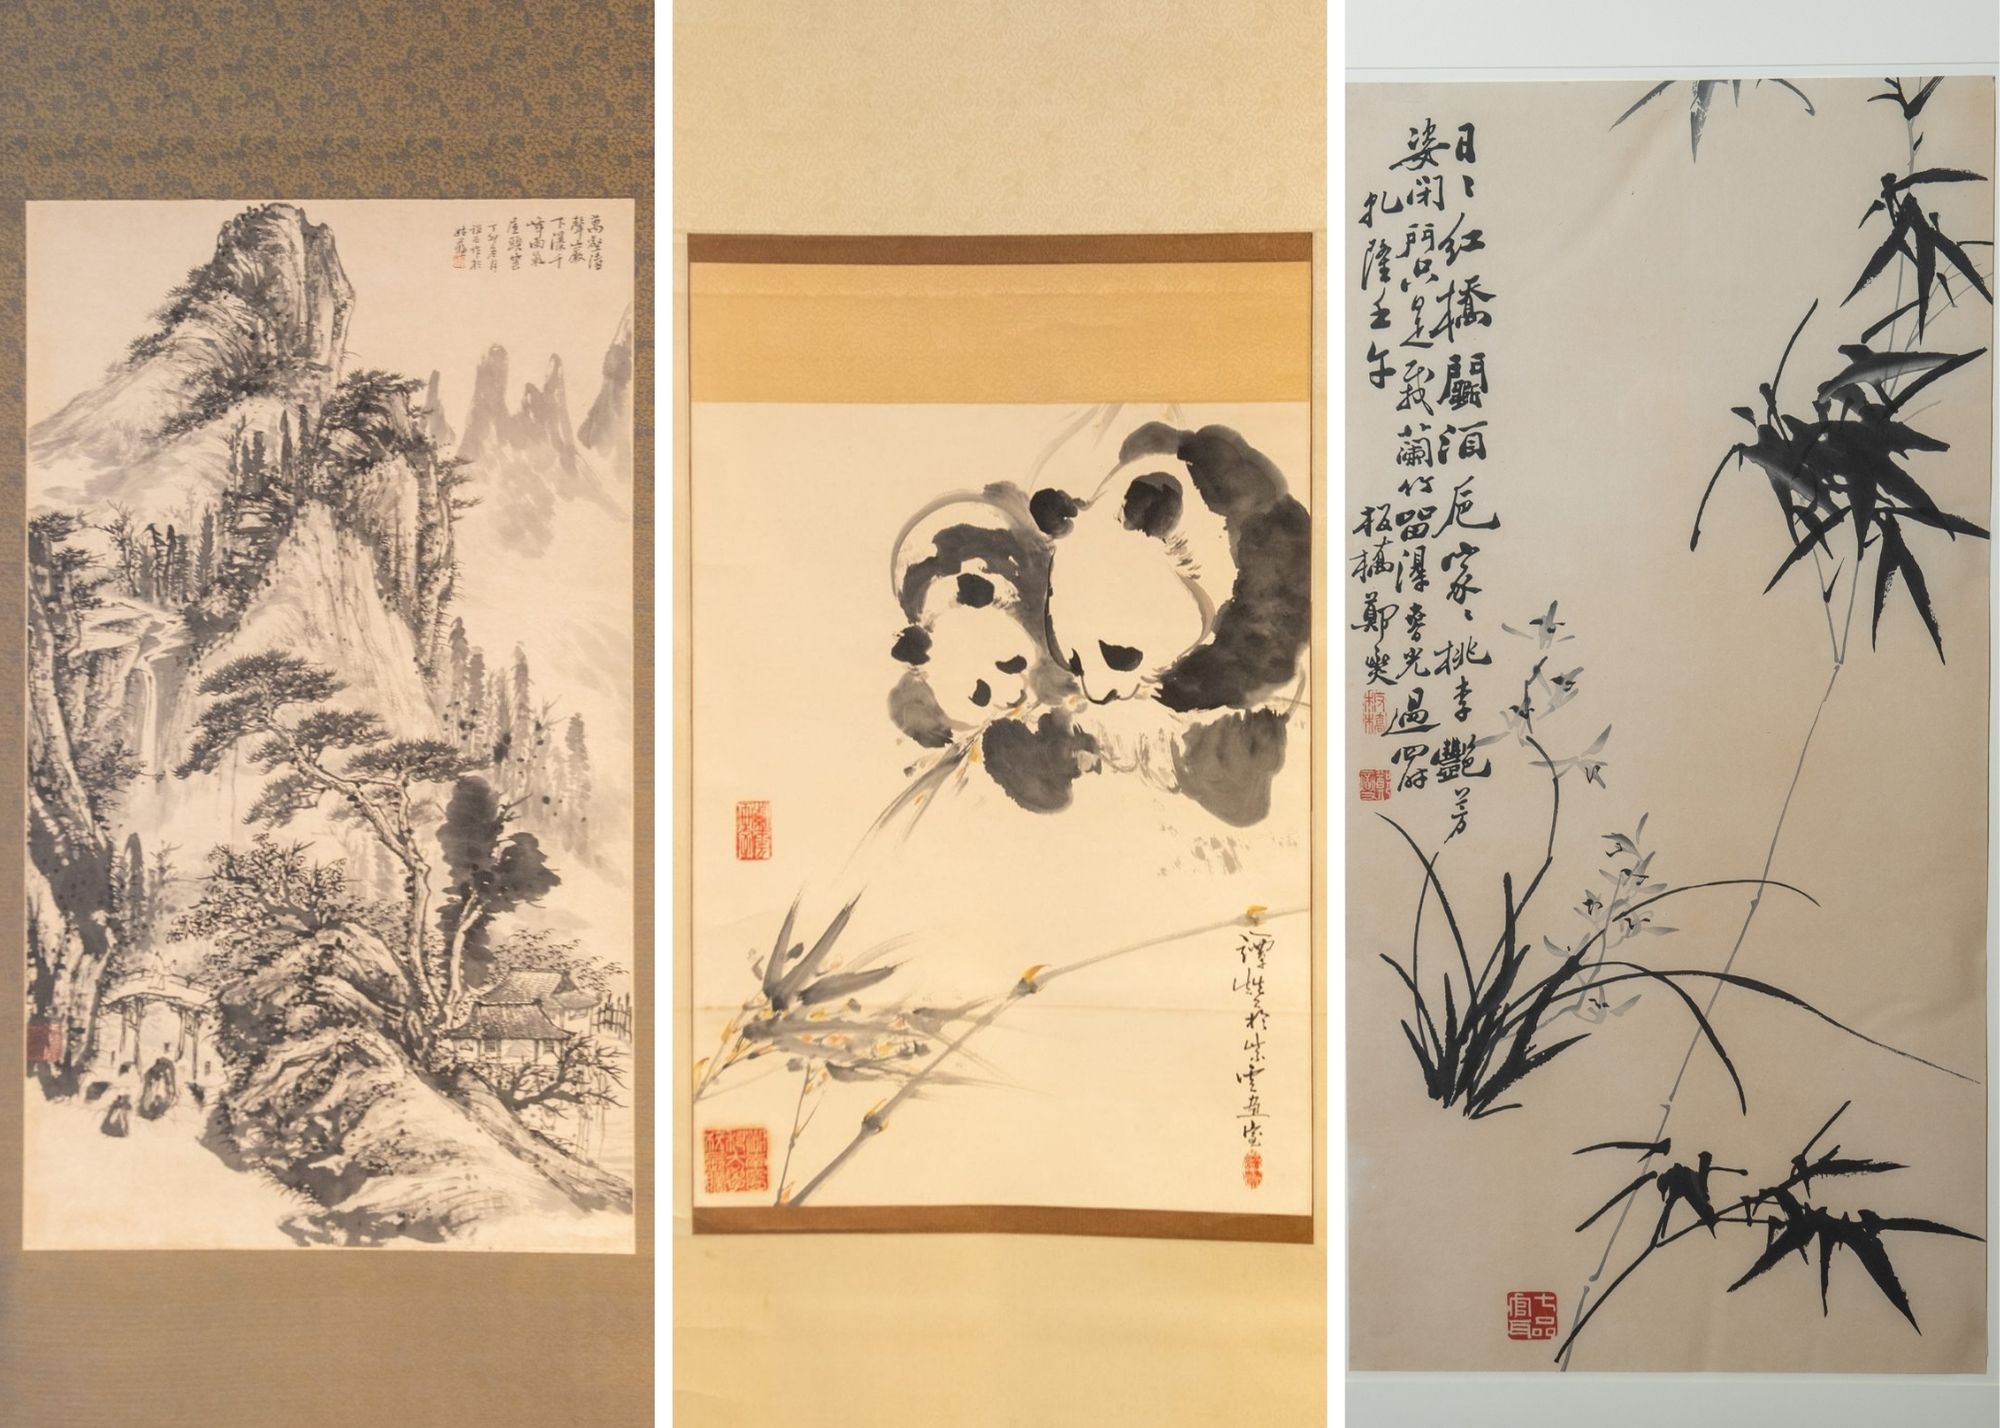 掛軸1967 ORIGINAL ASIAN ART CHINESE CALLIGRAPHY ARTWORK-爱新觉罗.启功 Qi Gong七律·长征  毛泽东